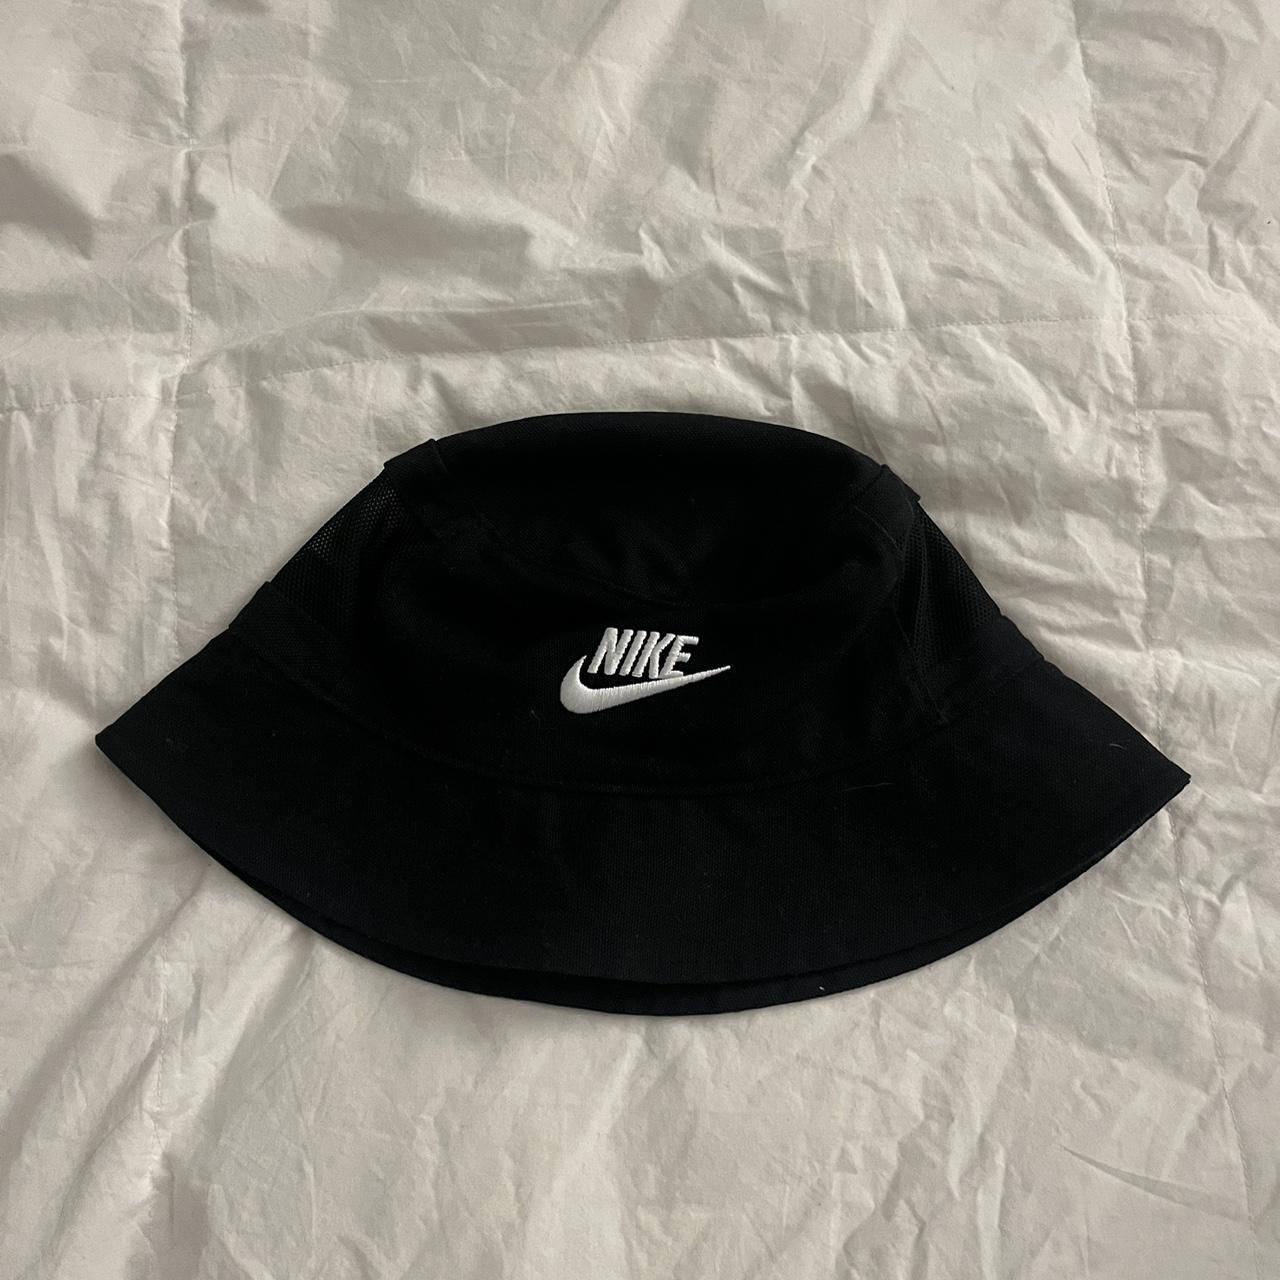 Nike bucket-hat - Depop